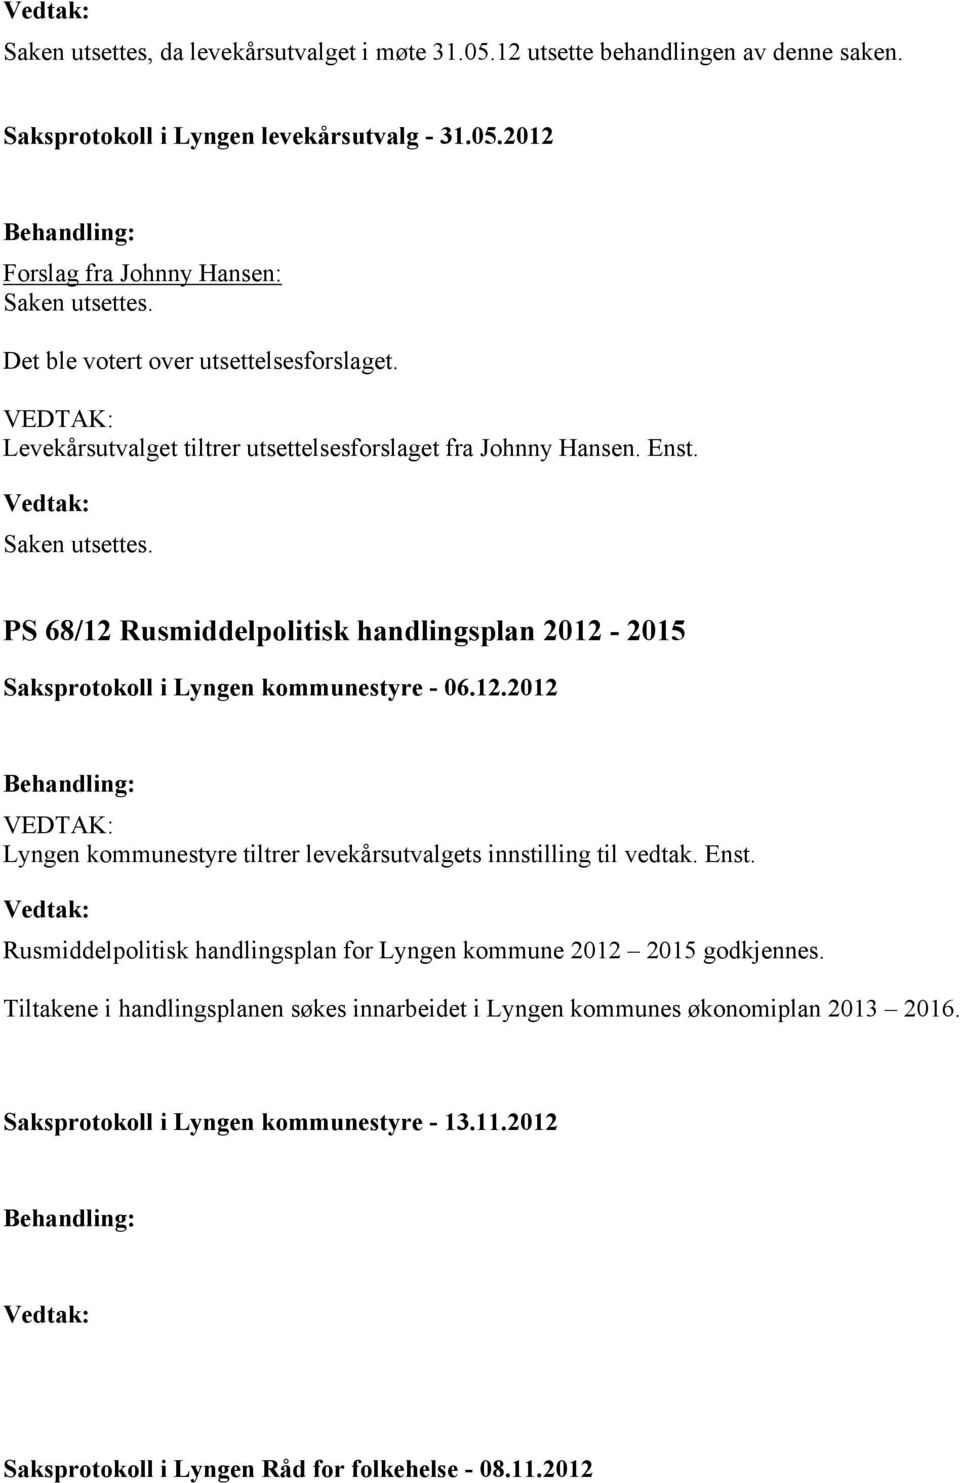 PS 68/12 Rusmiddelpolitisk handlingsplan 2012-2015 Lyngen kommunestyre tiltrer levekårsutvalgets innstilling til vedtak. Enst.